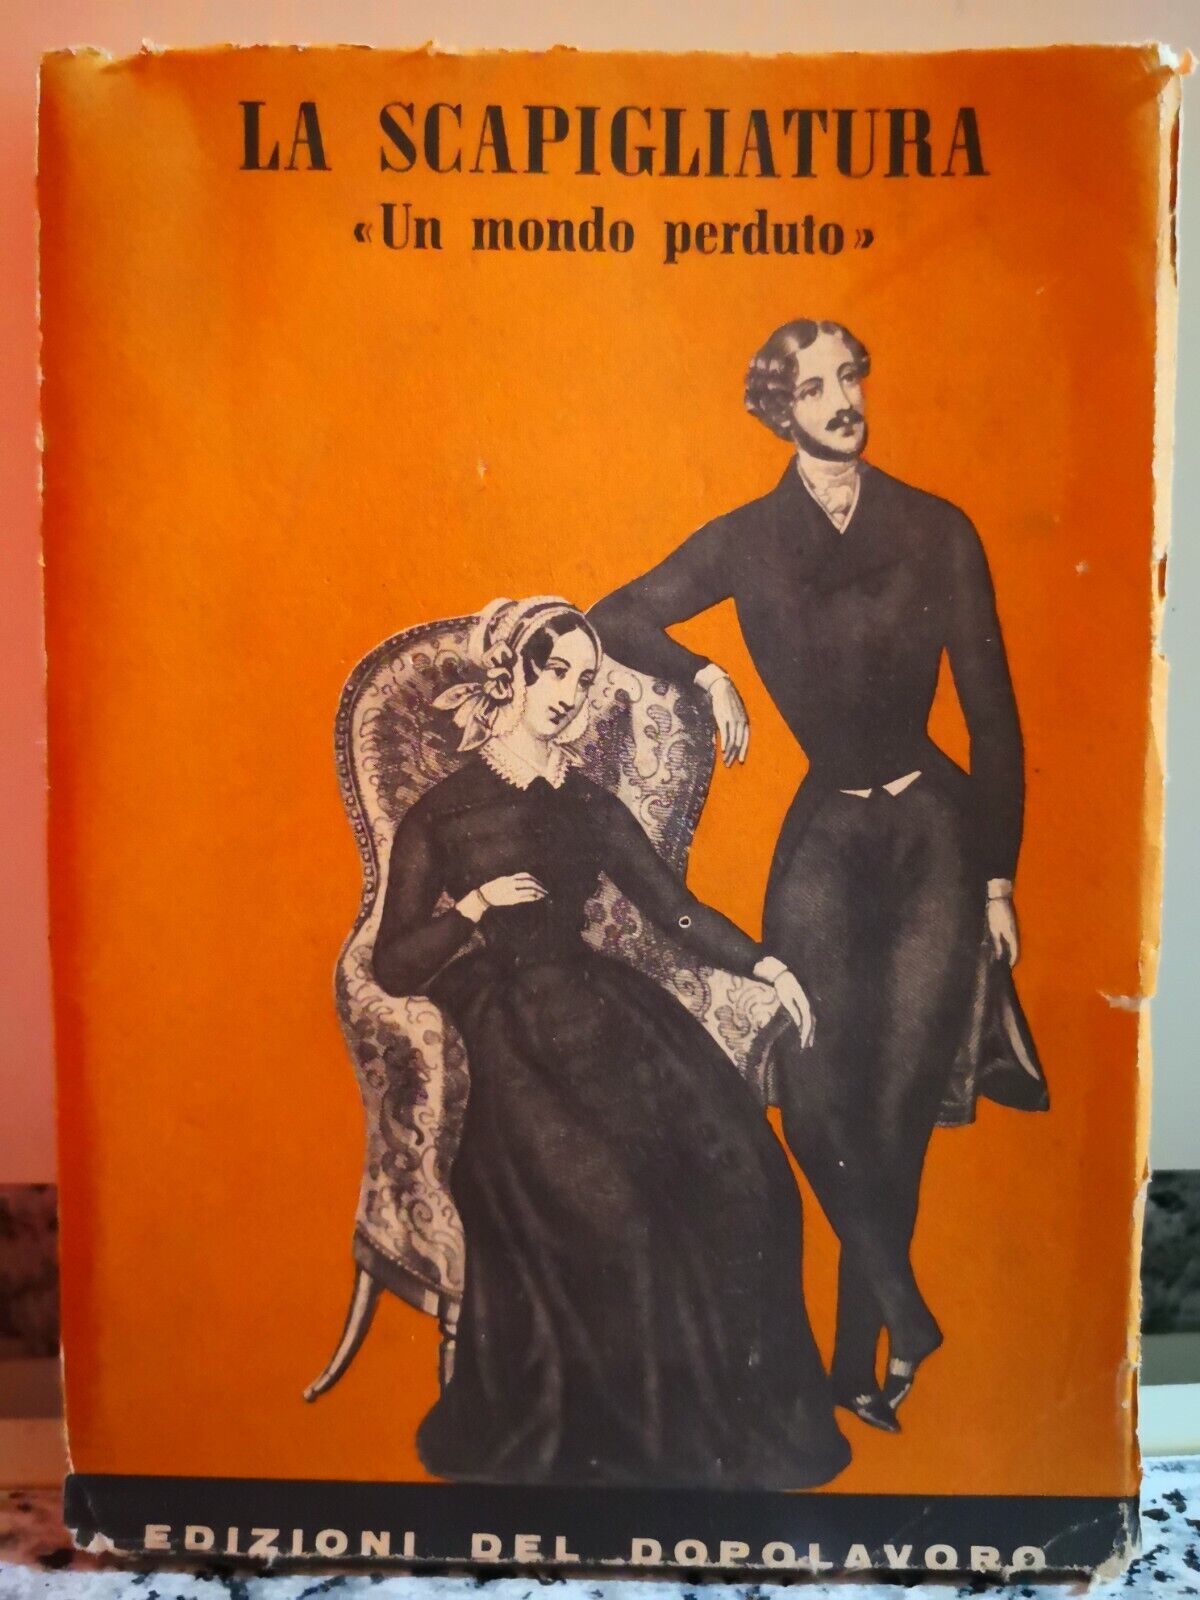  La scapigliatura Un mondo perduto di A.a.v.v,  1957,  Edizioni Del Dopolavoro-F